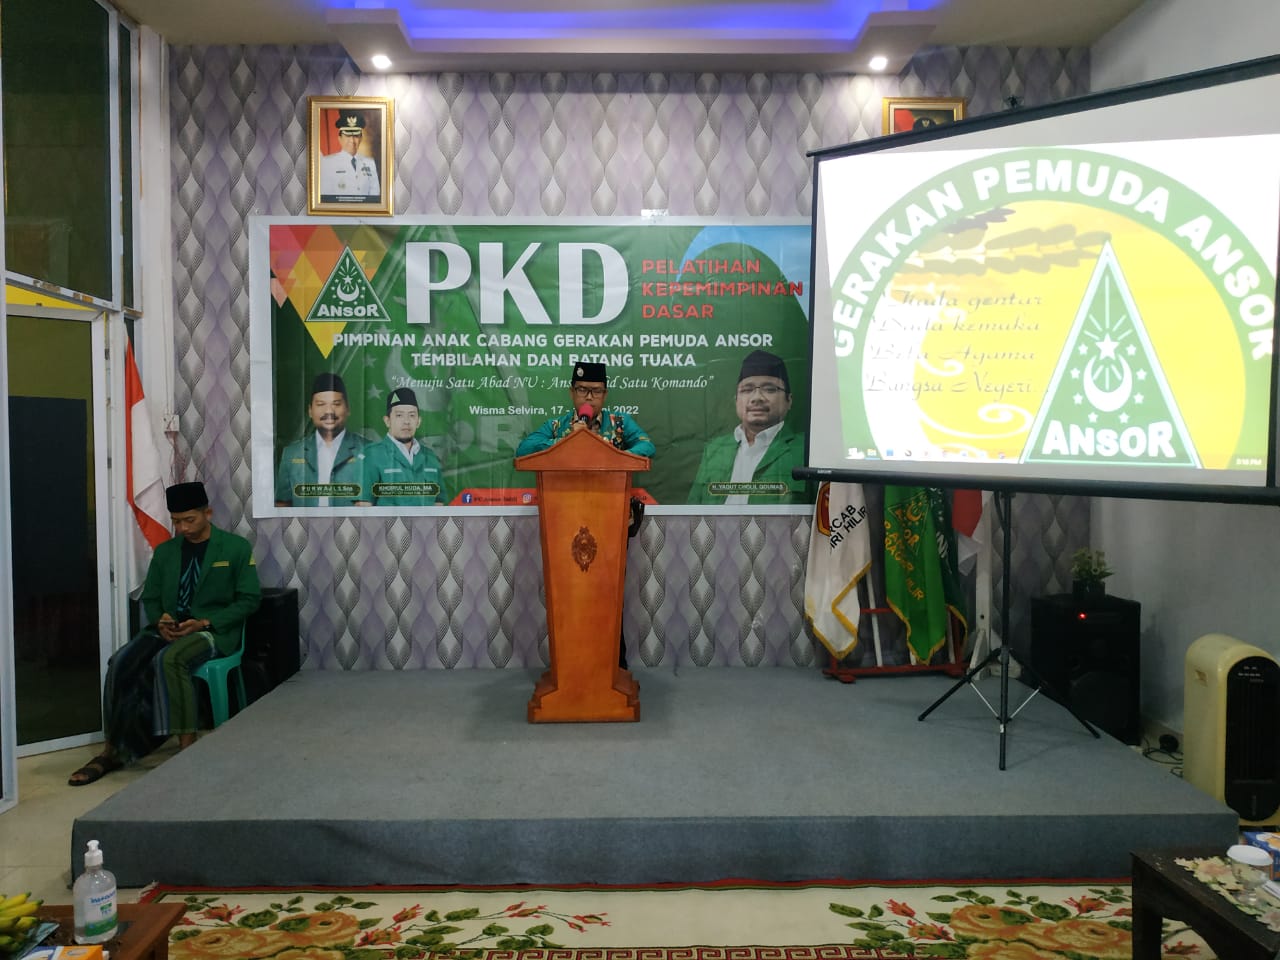 PKD Ansor PAC Tembilahan dan Batang Tuaka Resmi Dibuka